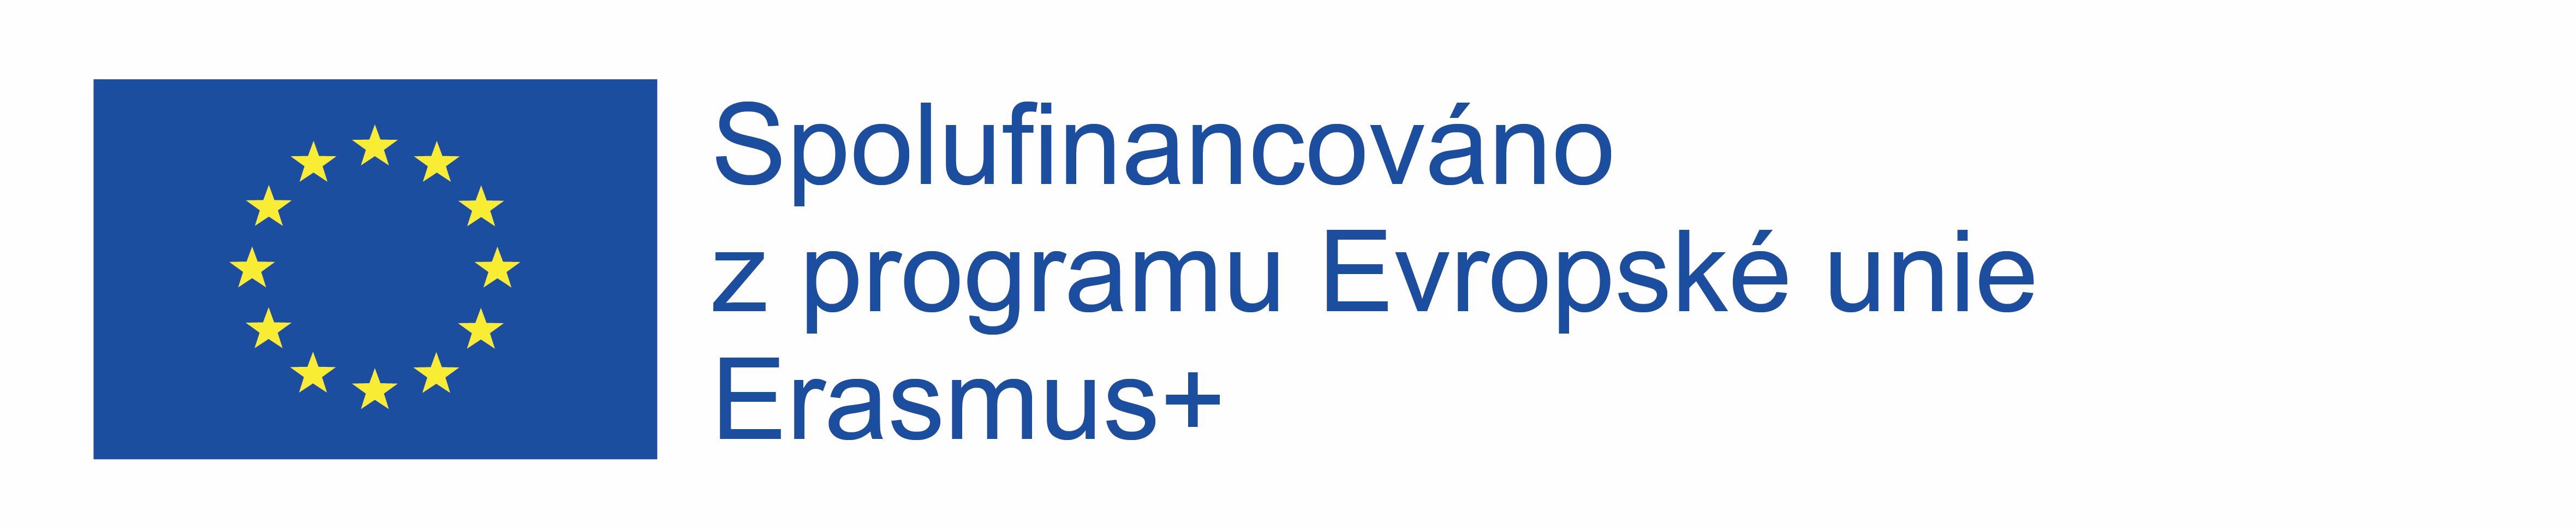 Logo Erasmus Spolufinancováno z EU logo vlevo zmenšené